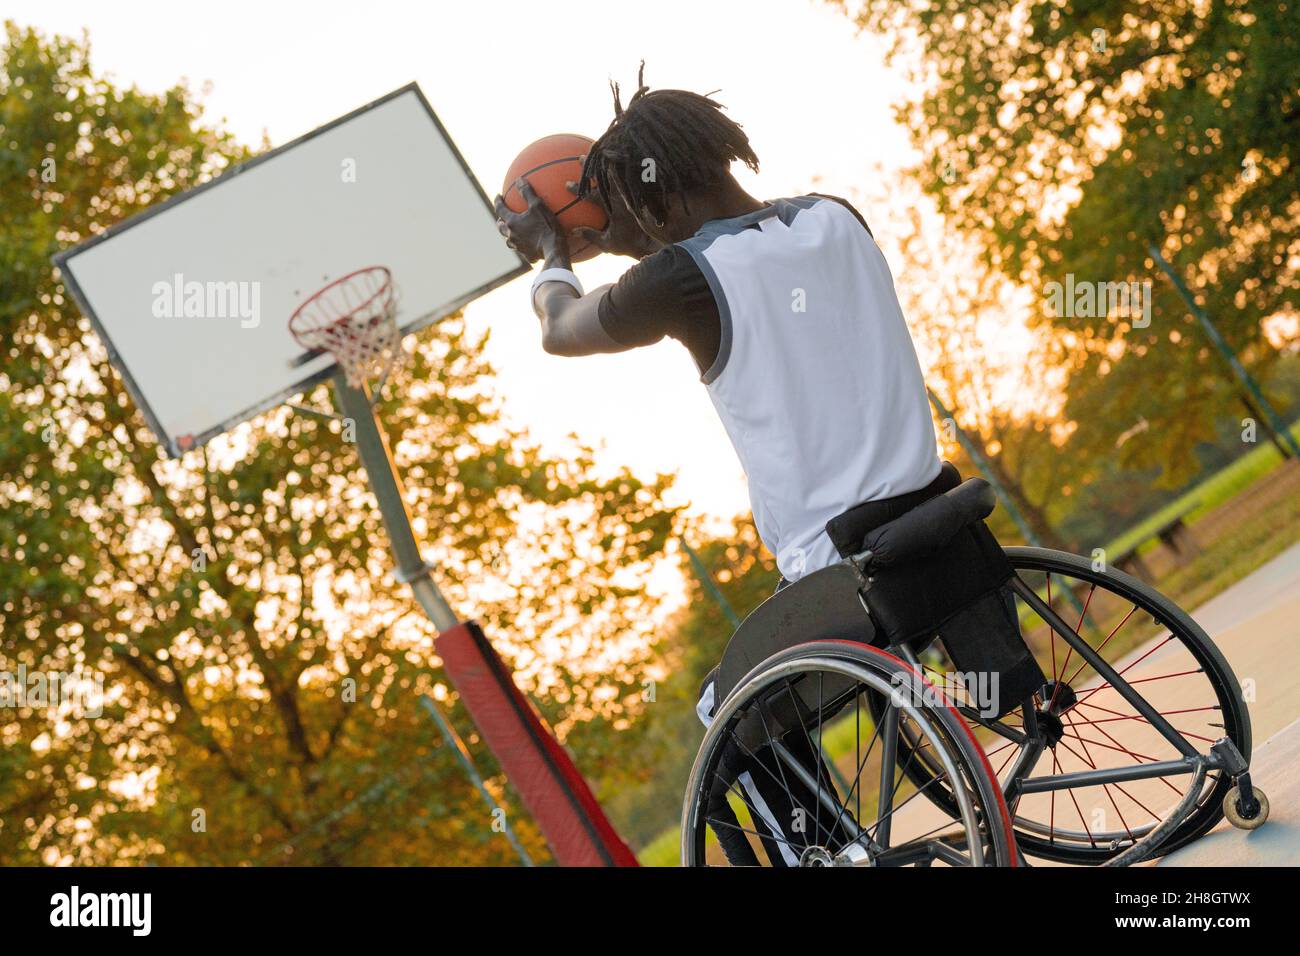 Junger Athlet auf Rollstuhl wirft Ball in Basketball-Korb, Sonnenuntergang-Effekt im Hintergrund, soziale incluzion und sortieren Vielfalt Konzept Stockfoto